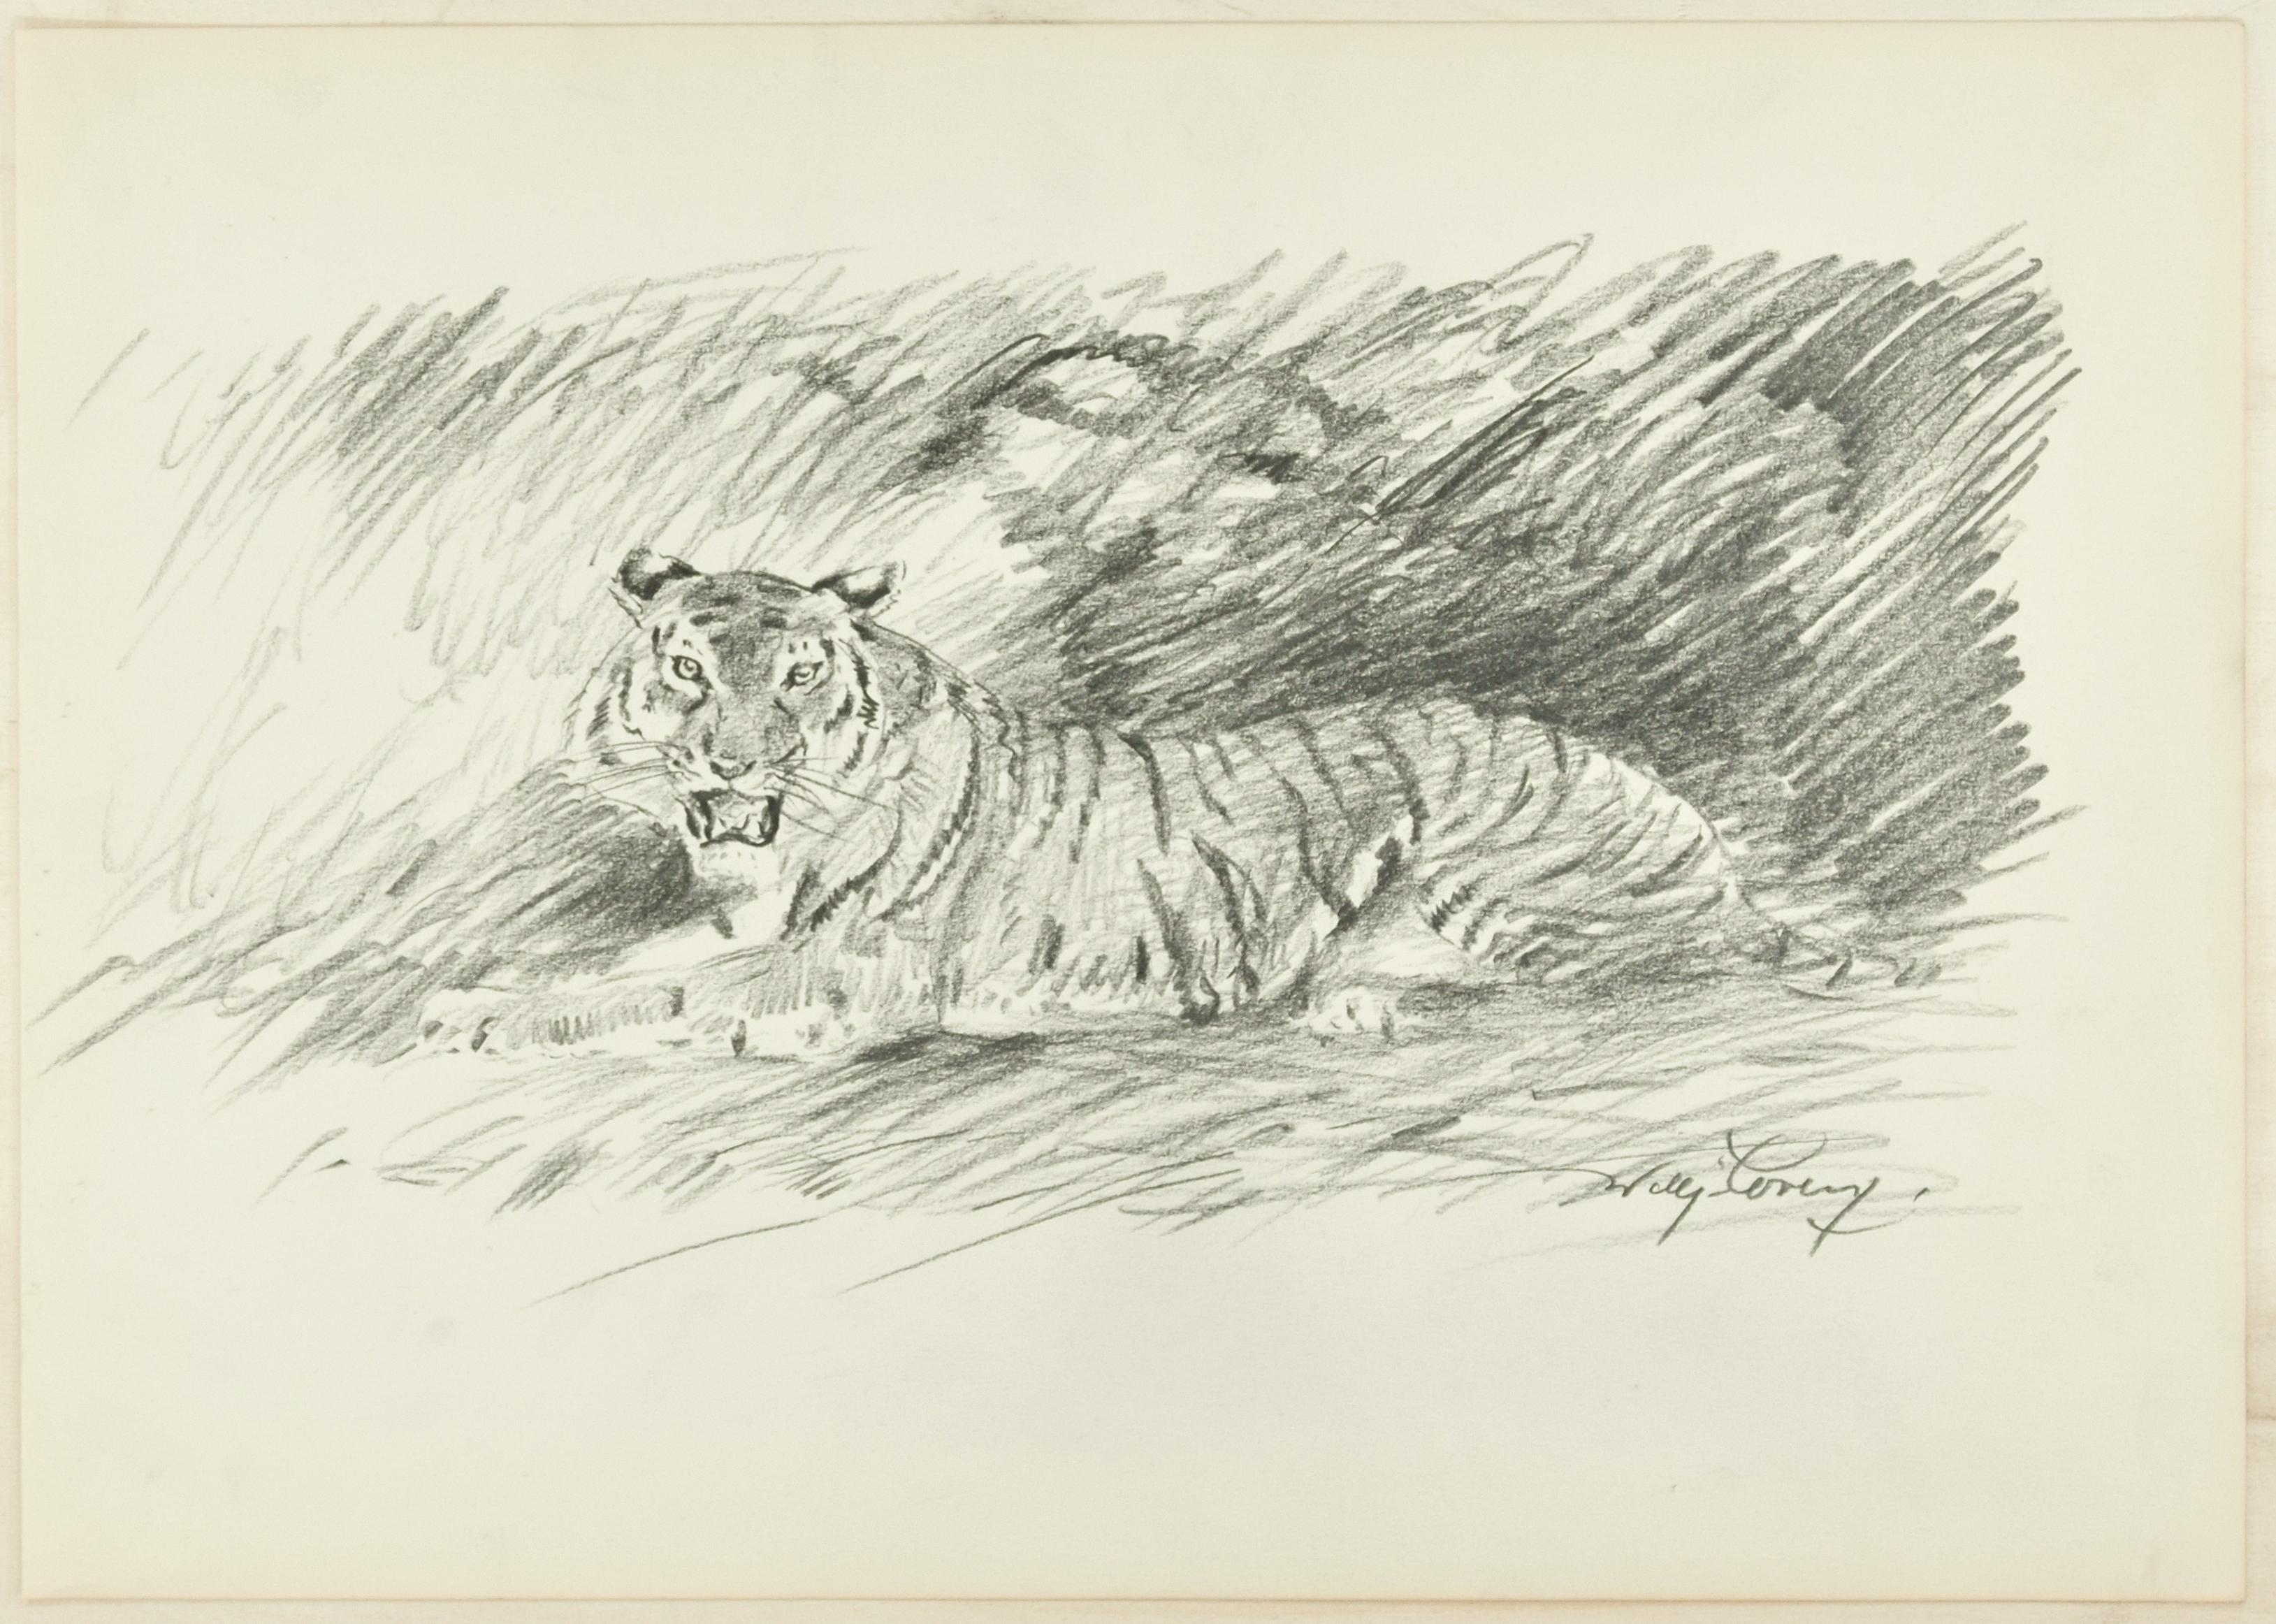 Roaring Tiger - Original-Bleistiftzeichnung von Willy Lorenz - 1940er Jahre